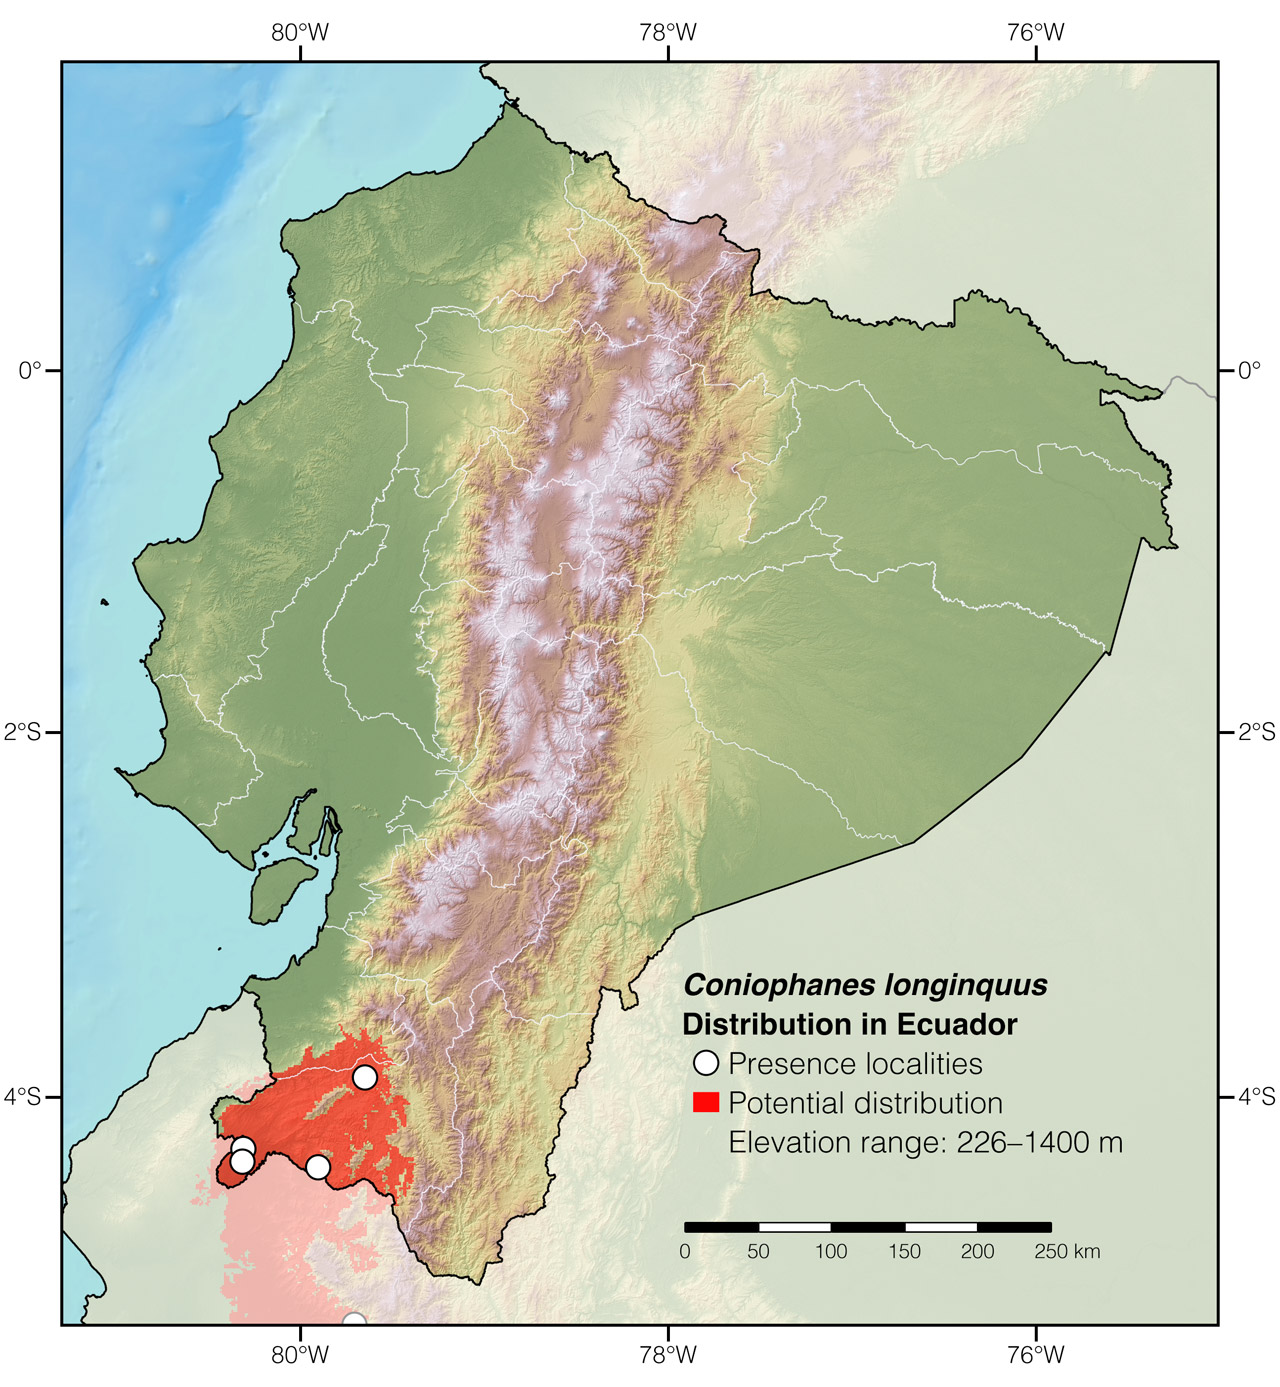 Distribution of Coniophanes longinquus in Ecuador